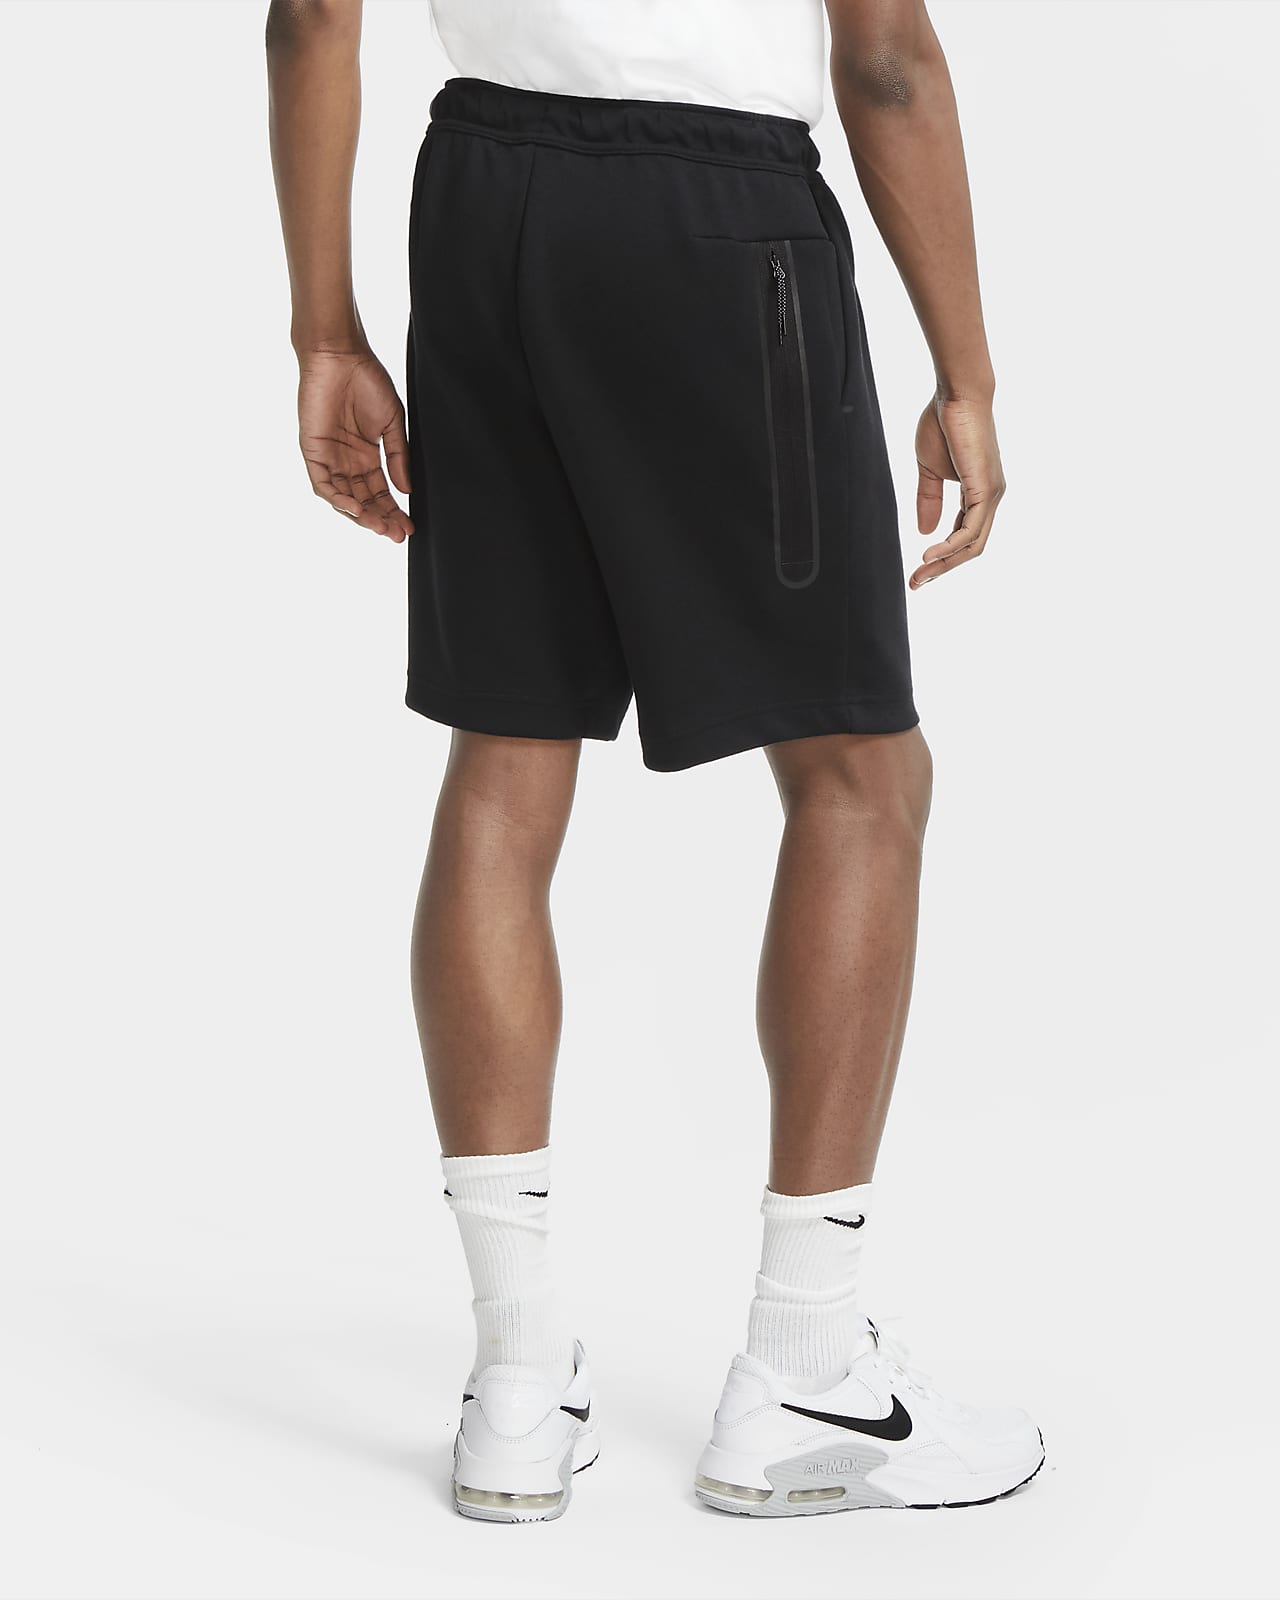 Nike Sportswear Tech Fleece Men's 